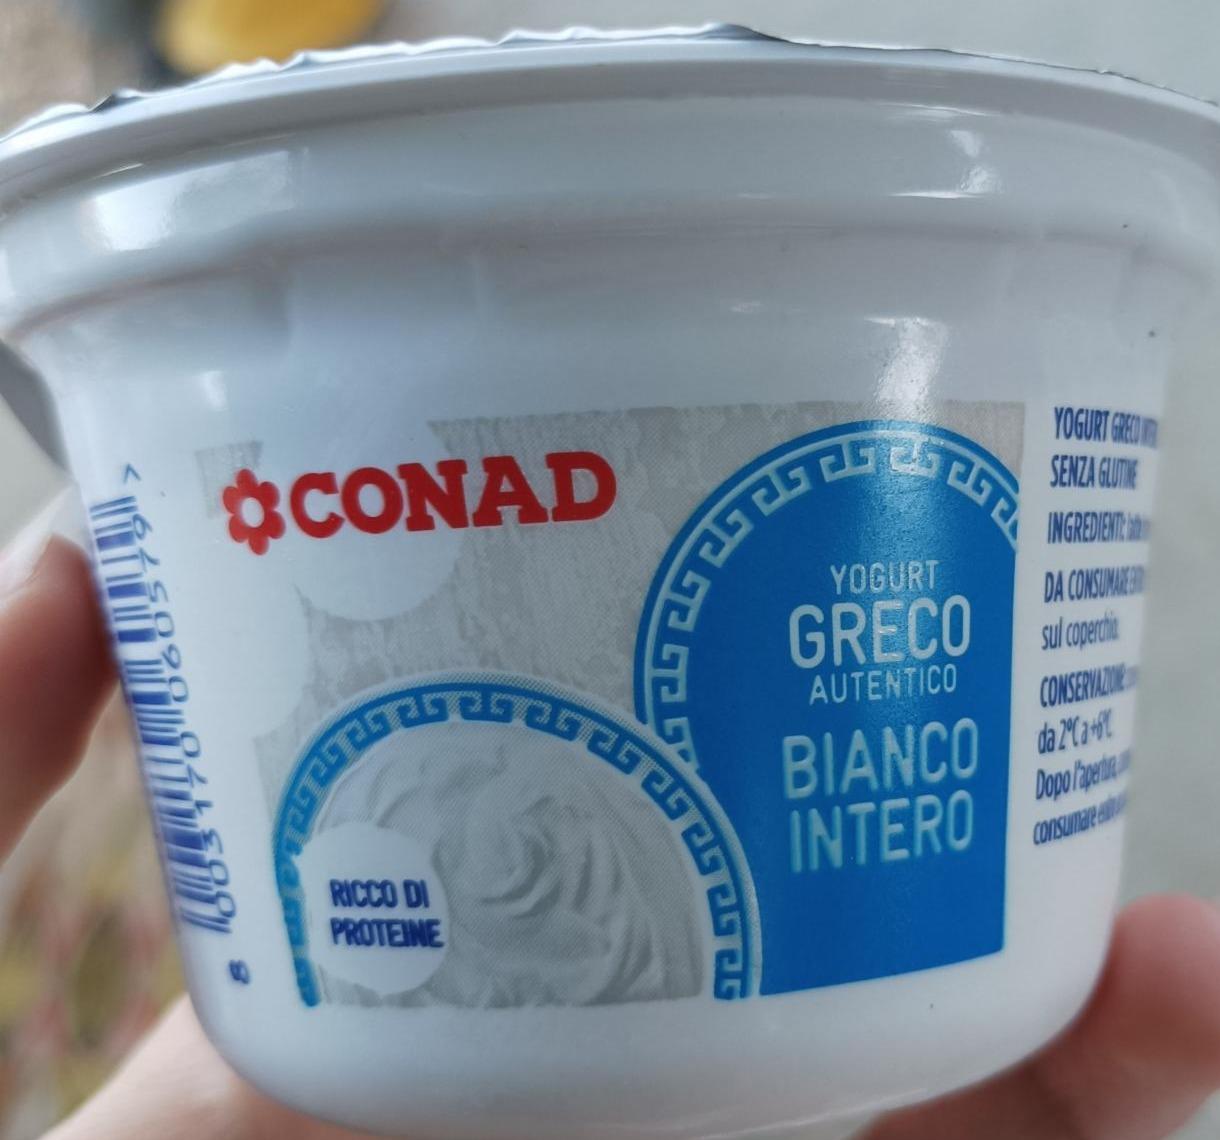 Fotografie - Yogurt Greco Autentico Bianco Intero Conad